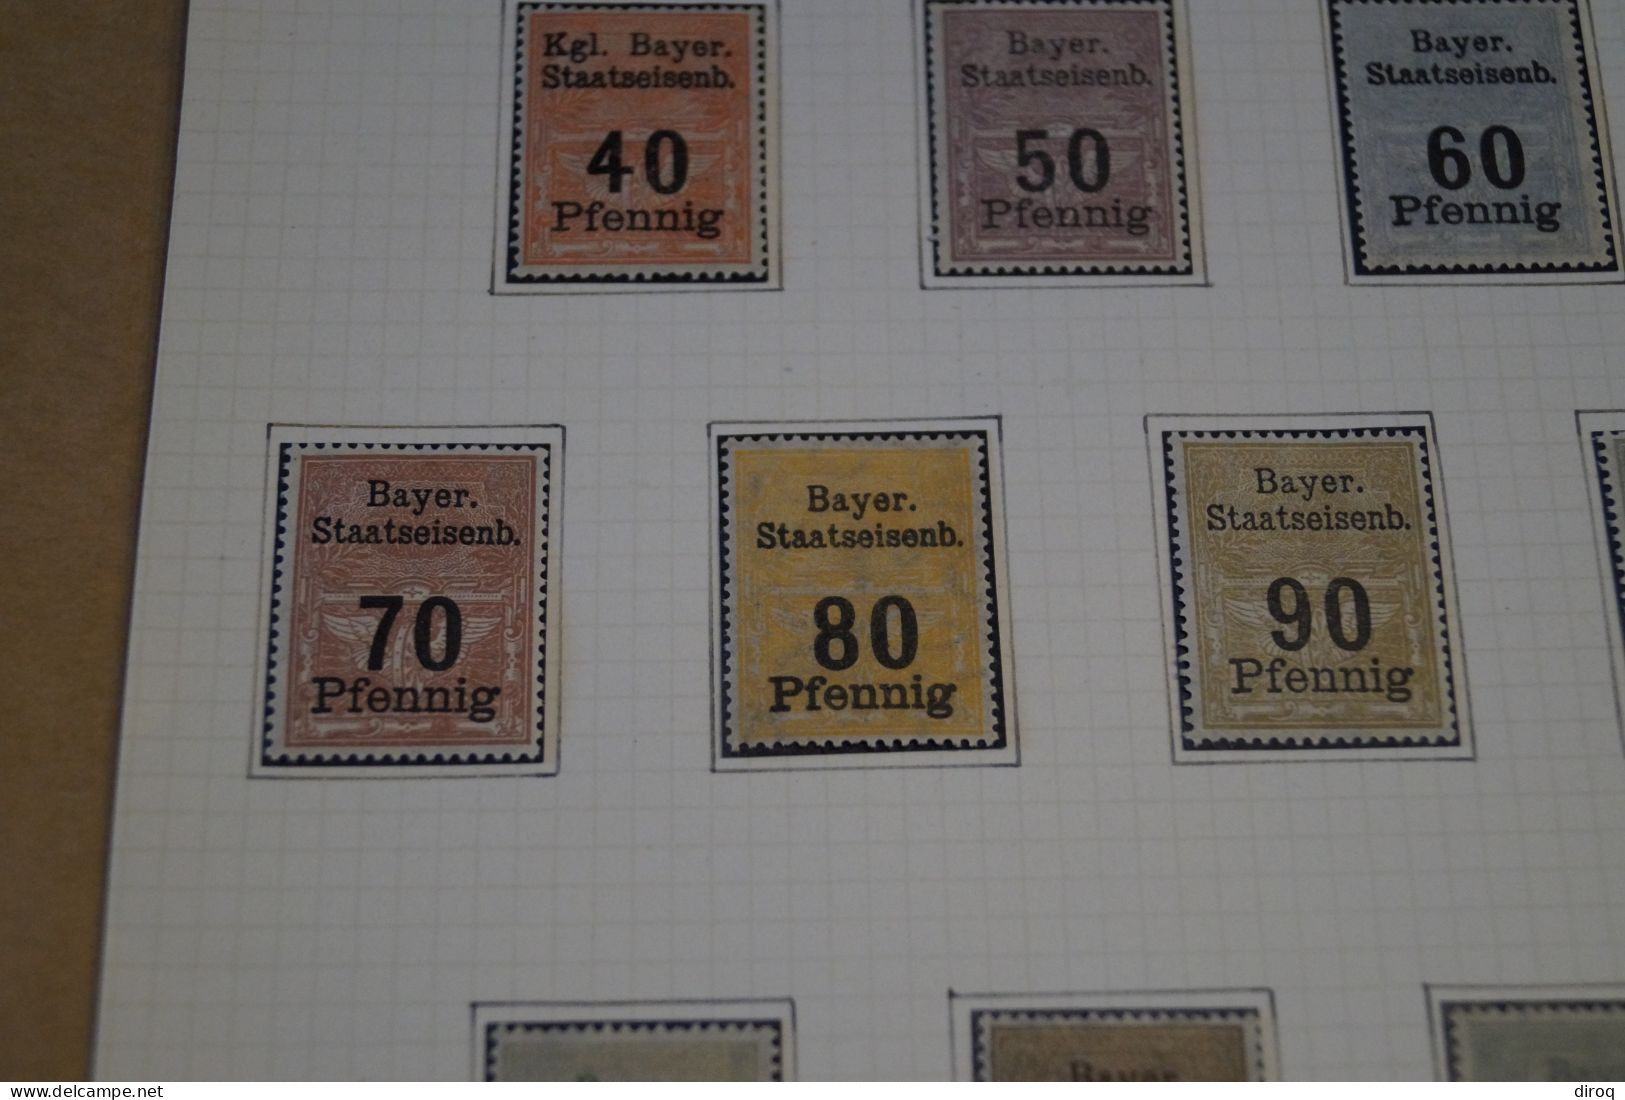 Très Belle Série 14 Timbres,Railway Stamps Bayer,chemin De Fer,1900,neuf Sur Charnière,bel état De Collection - Ongebruikt